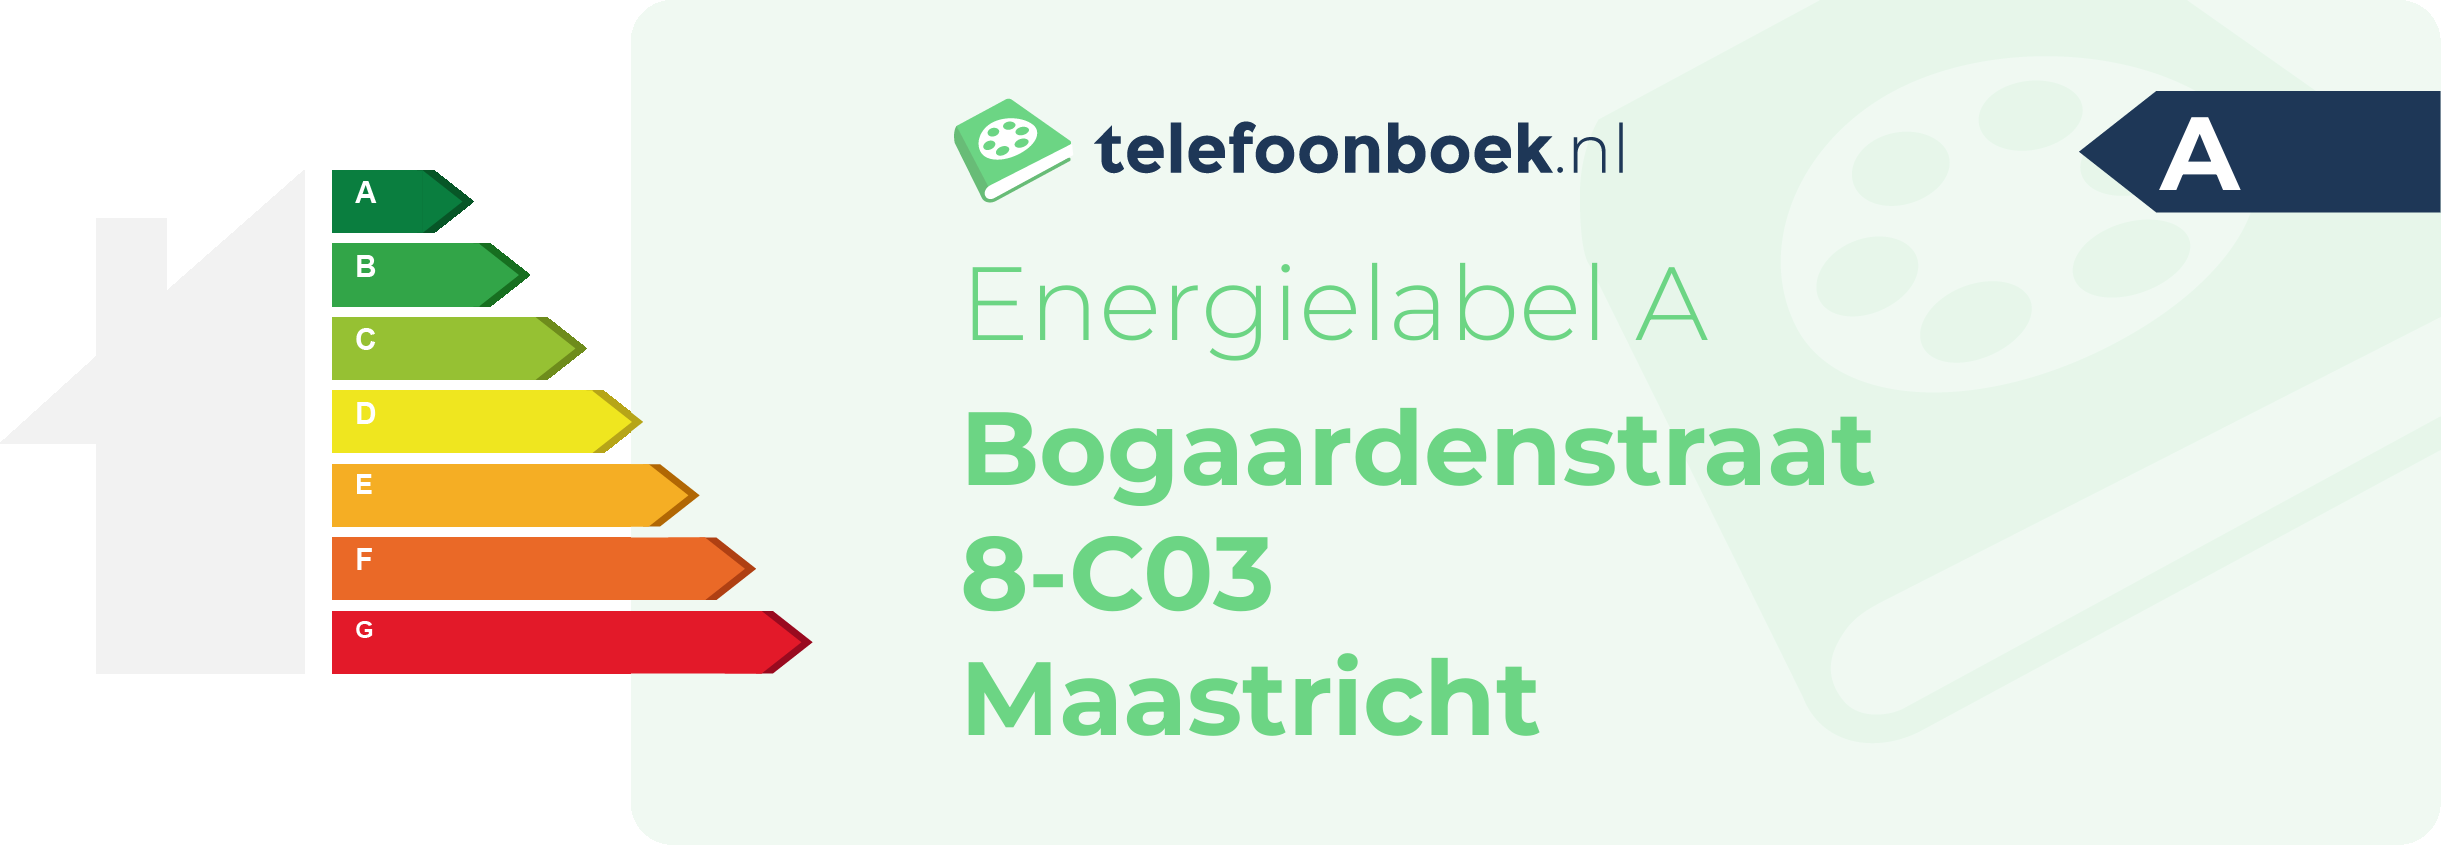 Energielabel Bogaardenstraat 8-C03 Maastricht